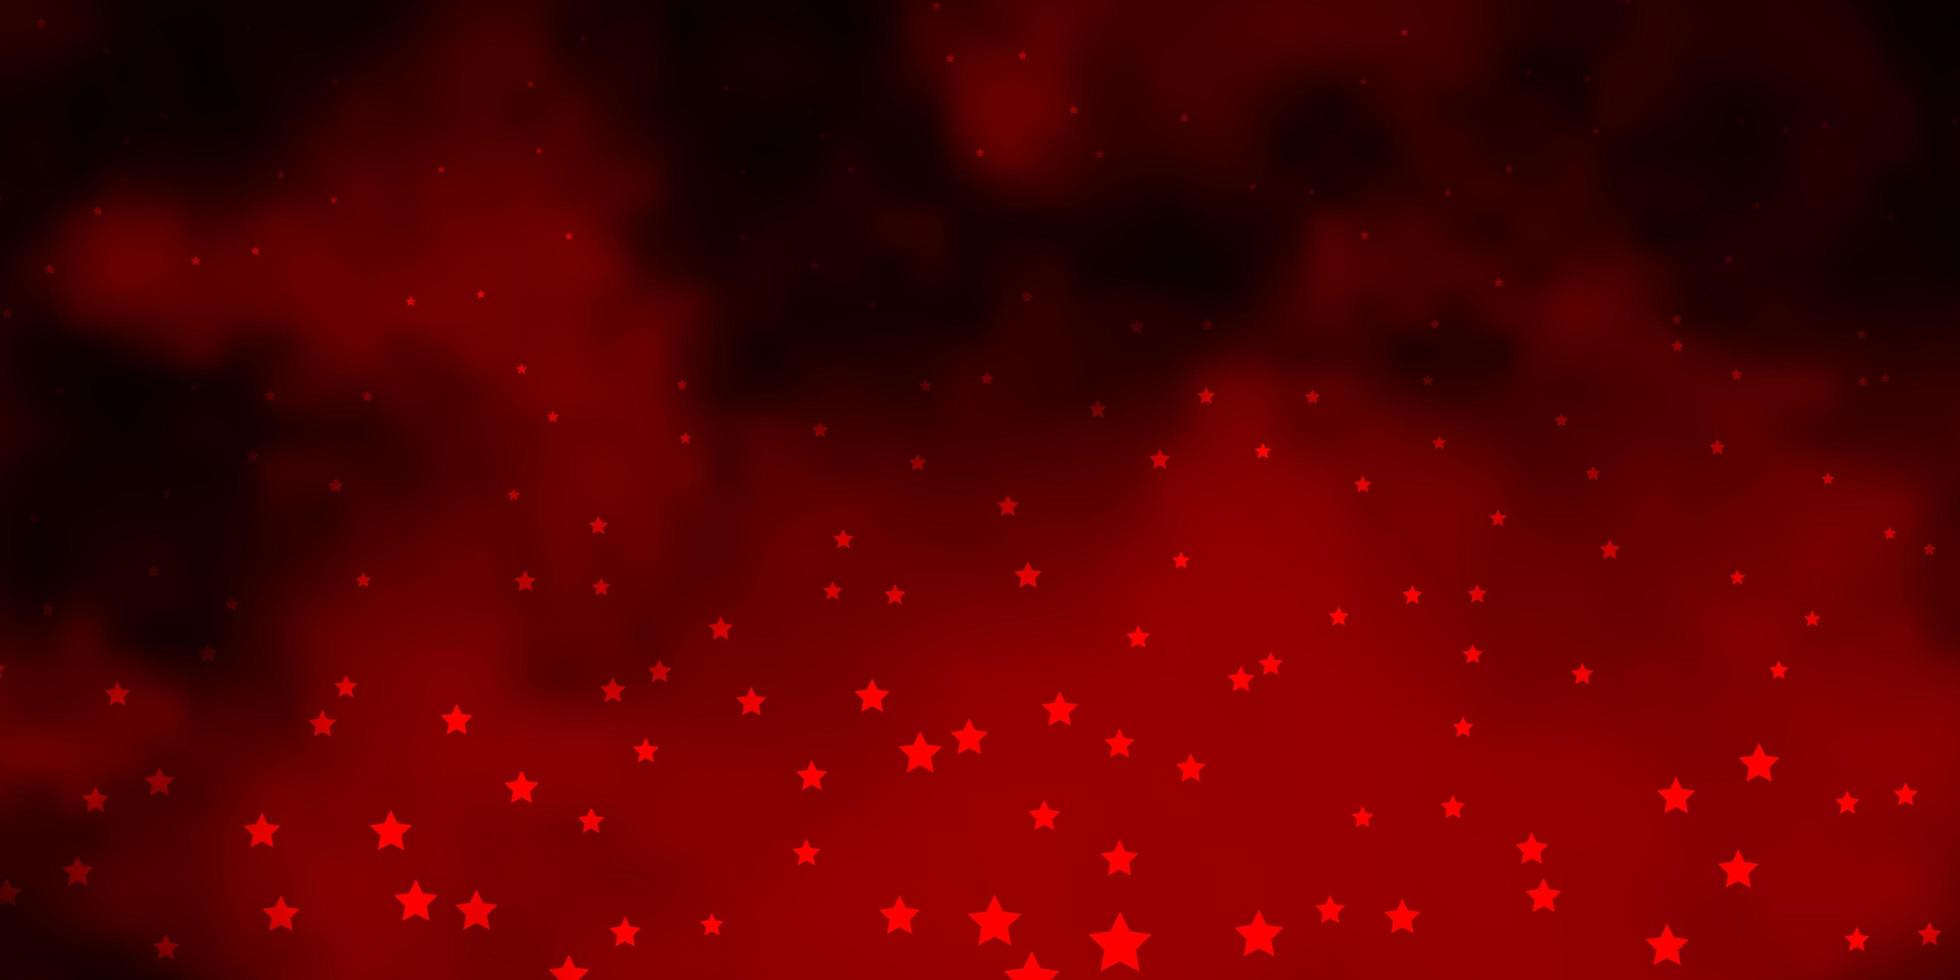 texture vecteur rouge foncé avec de belles étoiles illustration abstraite géométrique moderne avec des étoiles design pour la promotion de votre entreprise